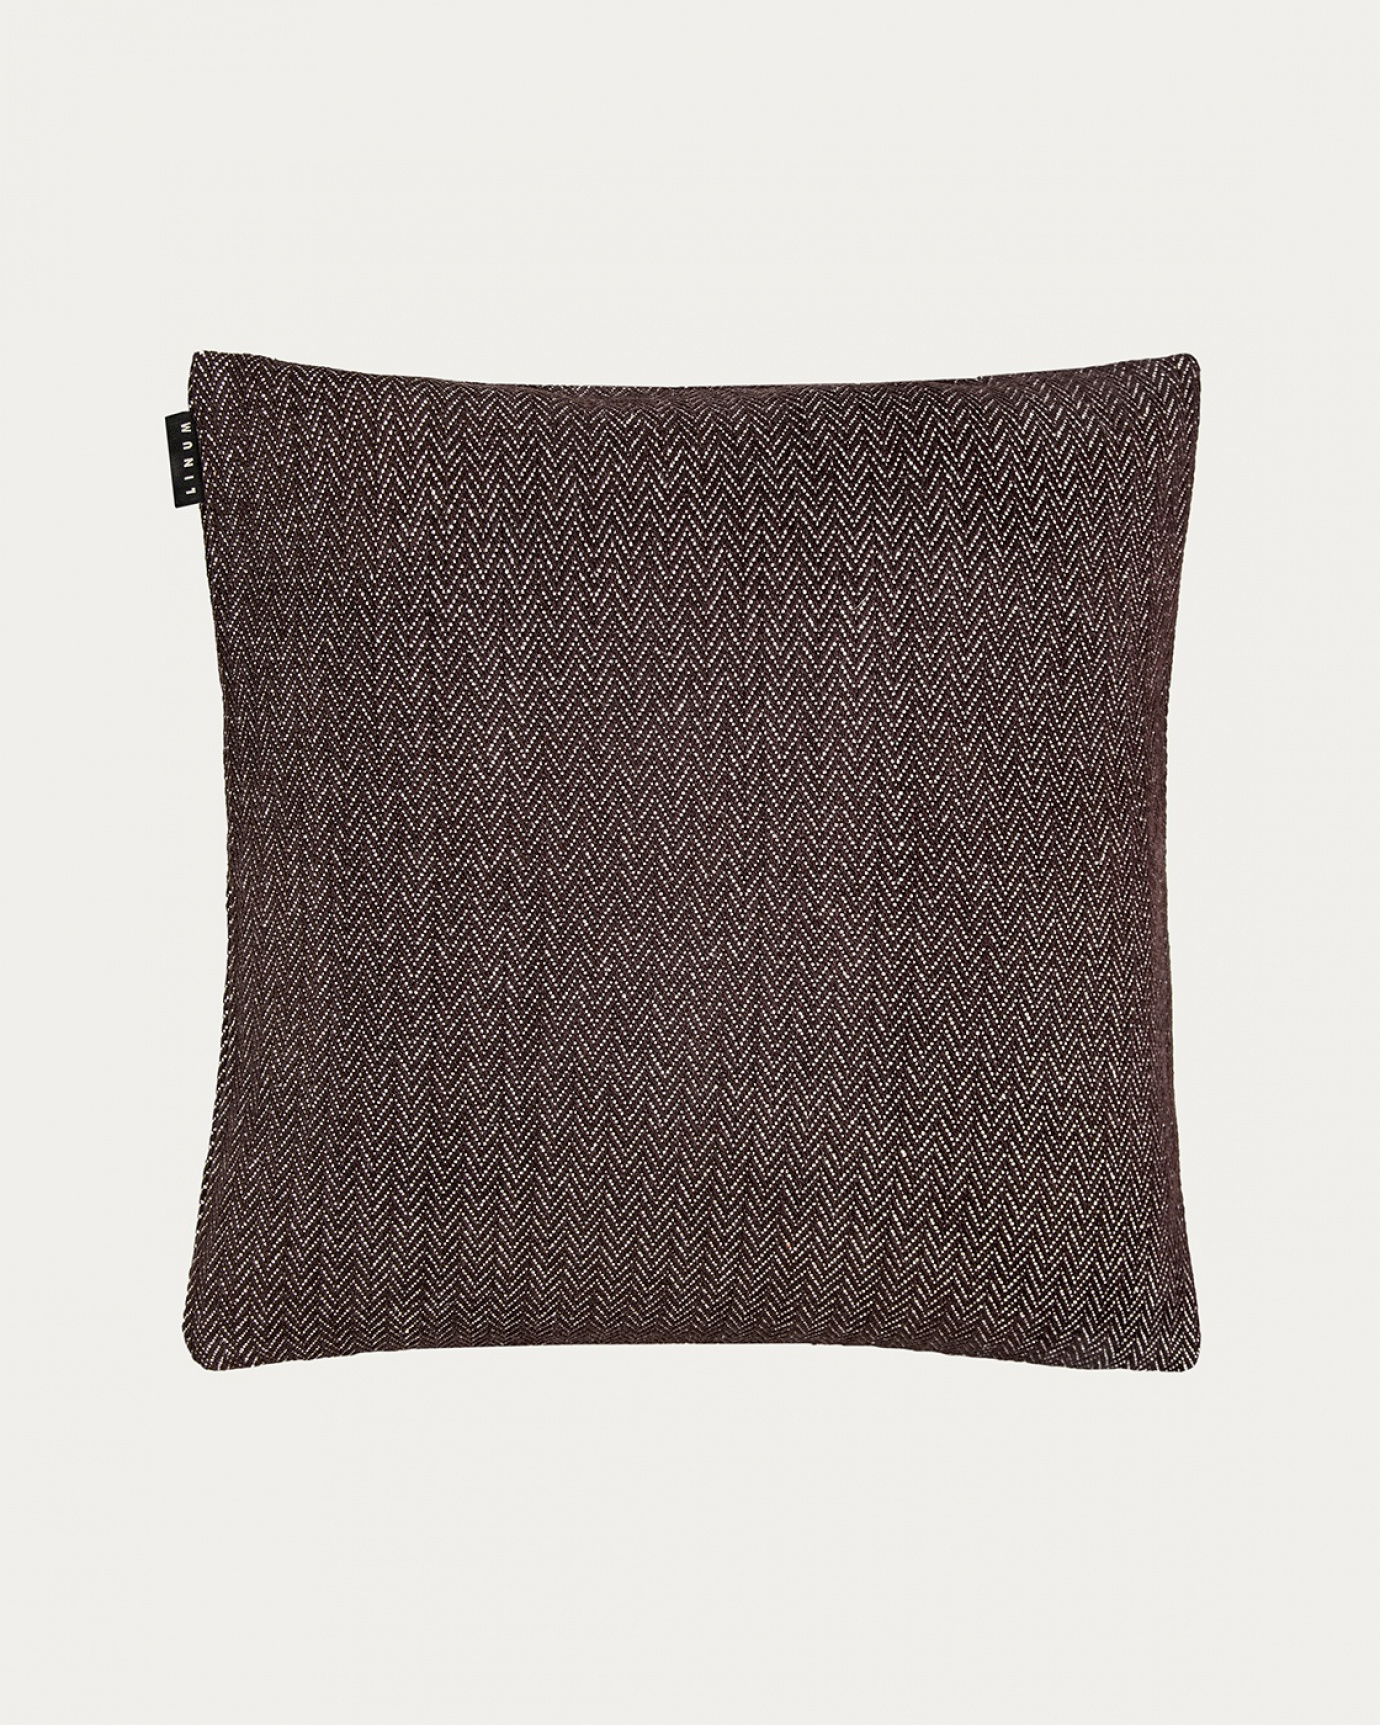 Image du produit housse de coussin SHEPARD marron foncé en coton doux avec un motif à chevrons discret de LINUM DESIGN. Taille 50 x 50 cm.